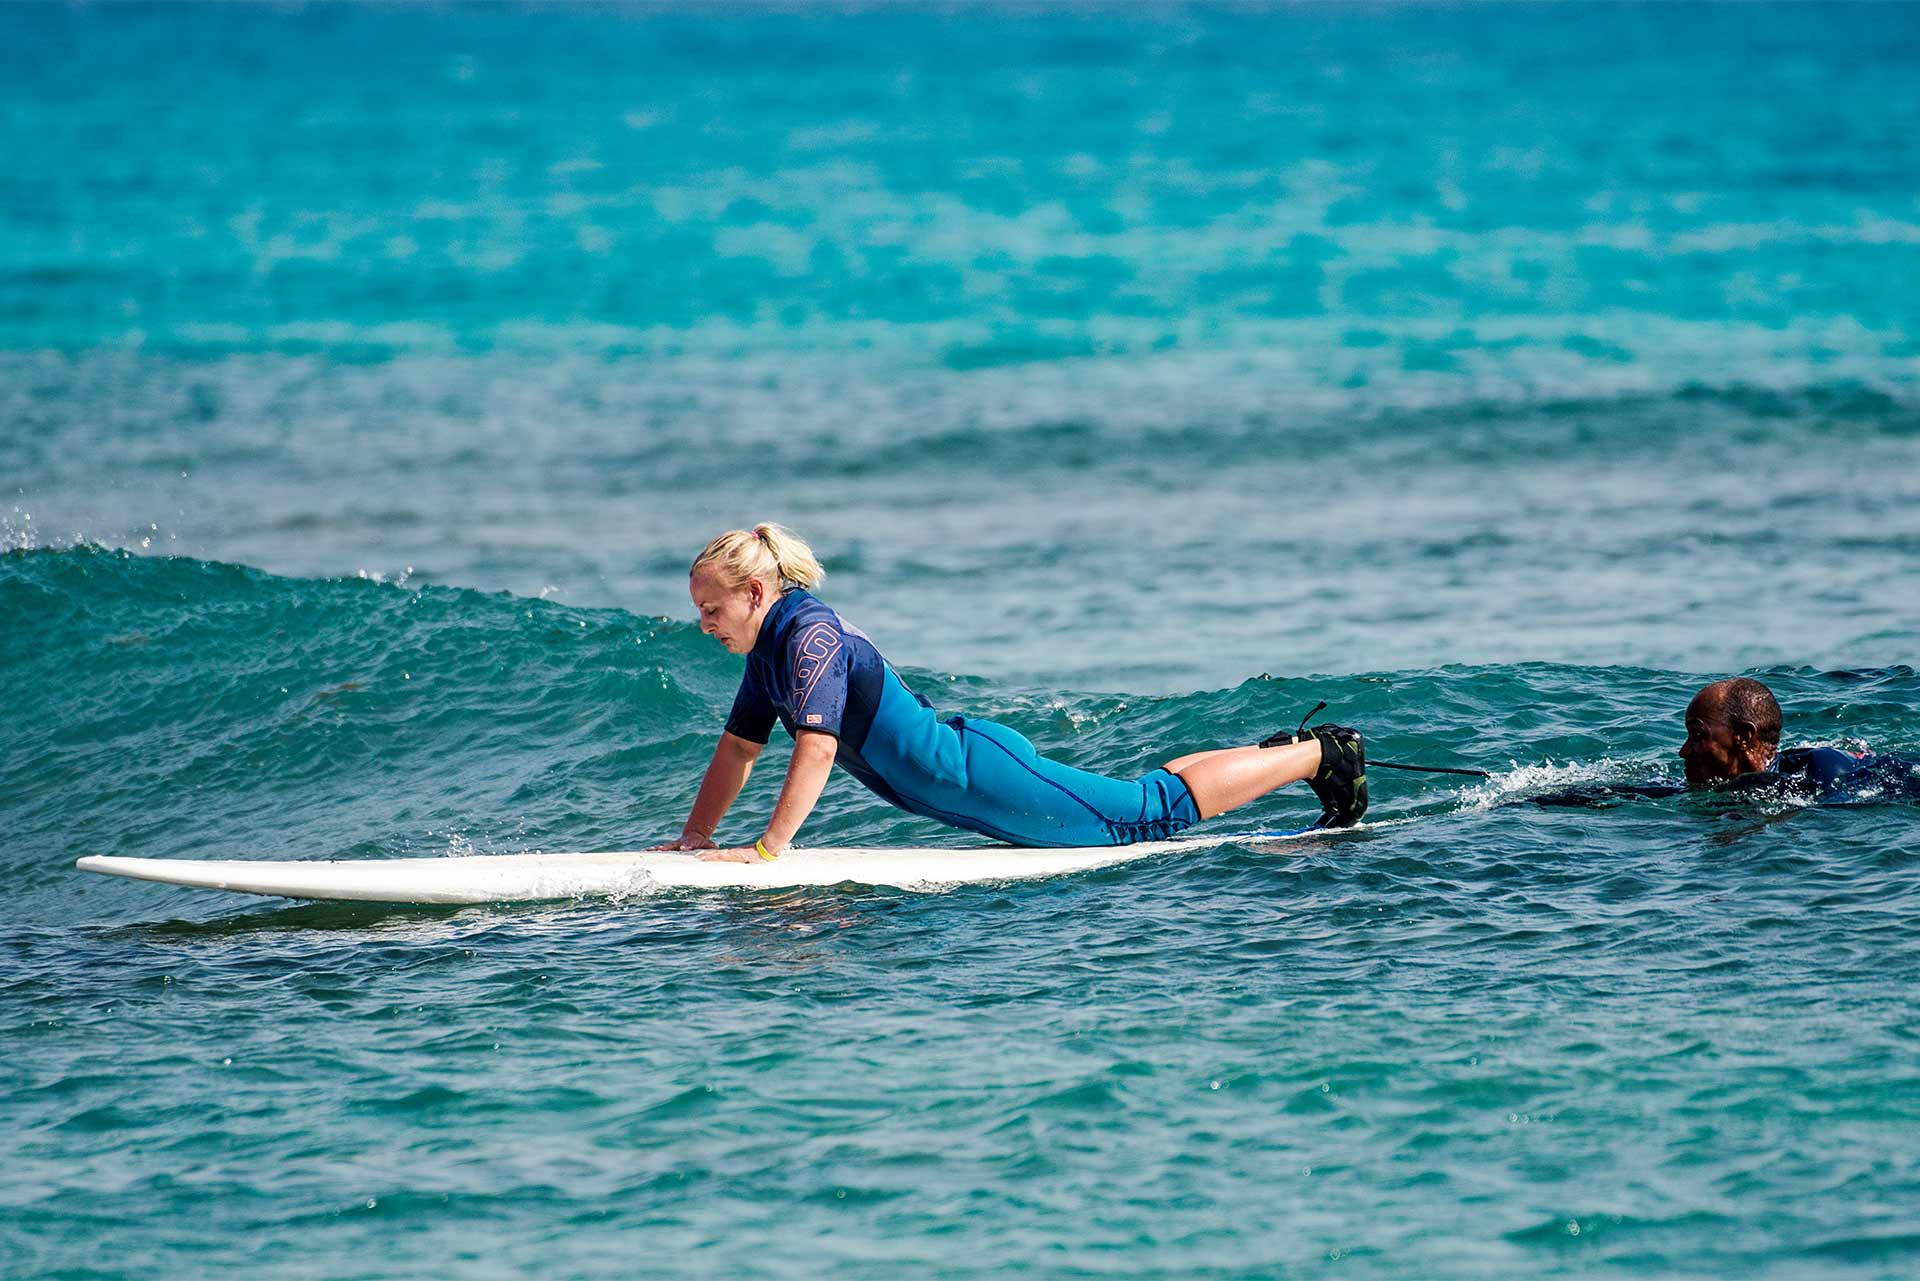 Une femme sur une planche de surf essaie d'attraper sa première vague avec son instructeur pendant un cours de surf dans l'eau. 